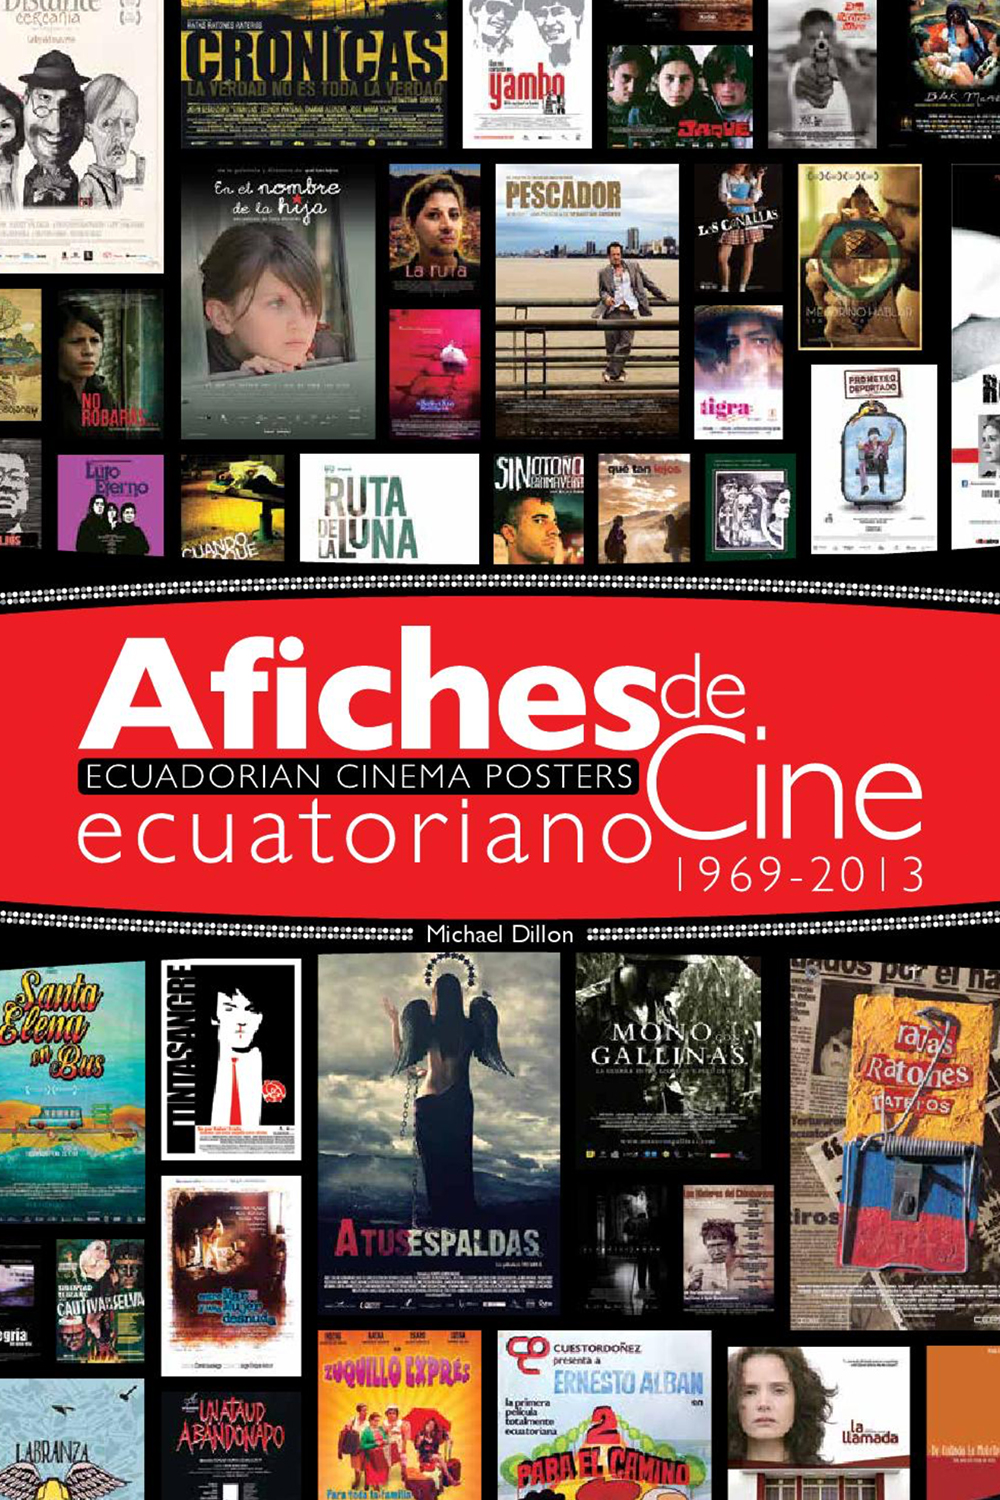 ECUADORIAN CINEMA POSTER: 1963-2013